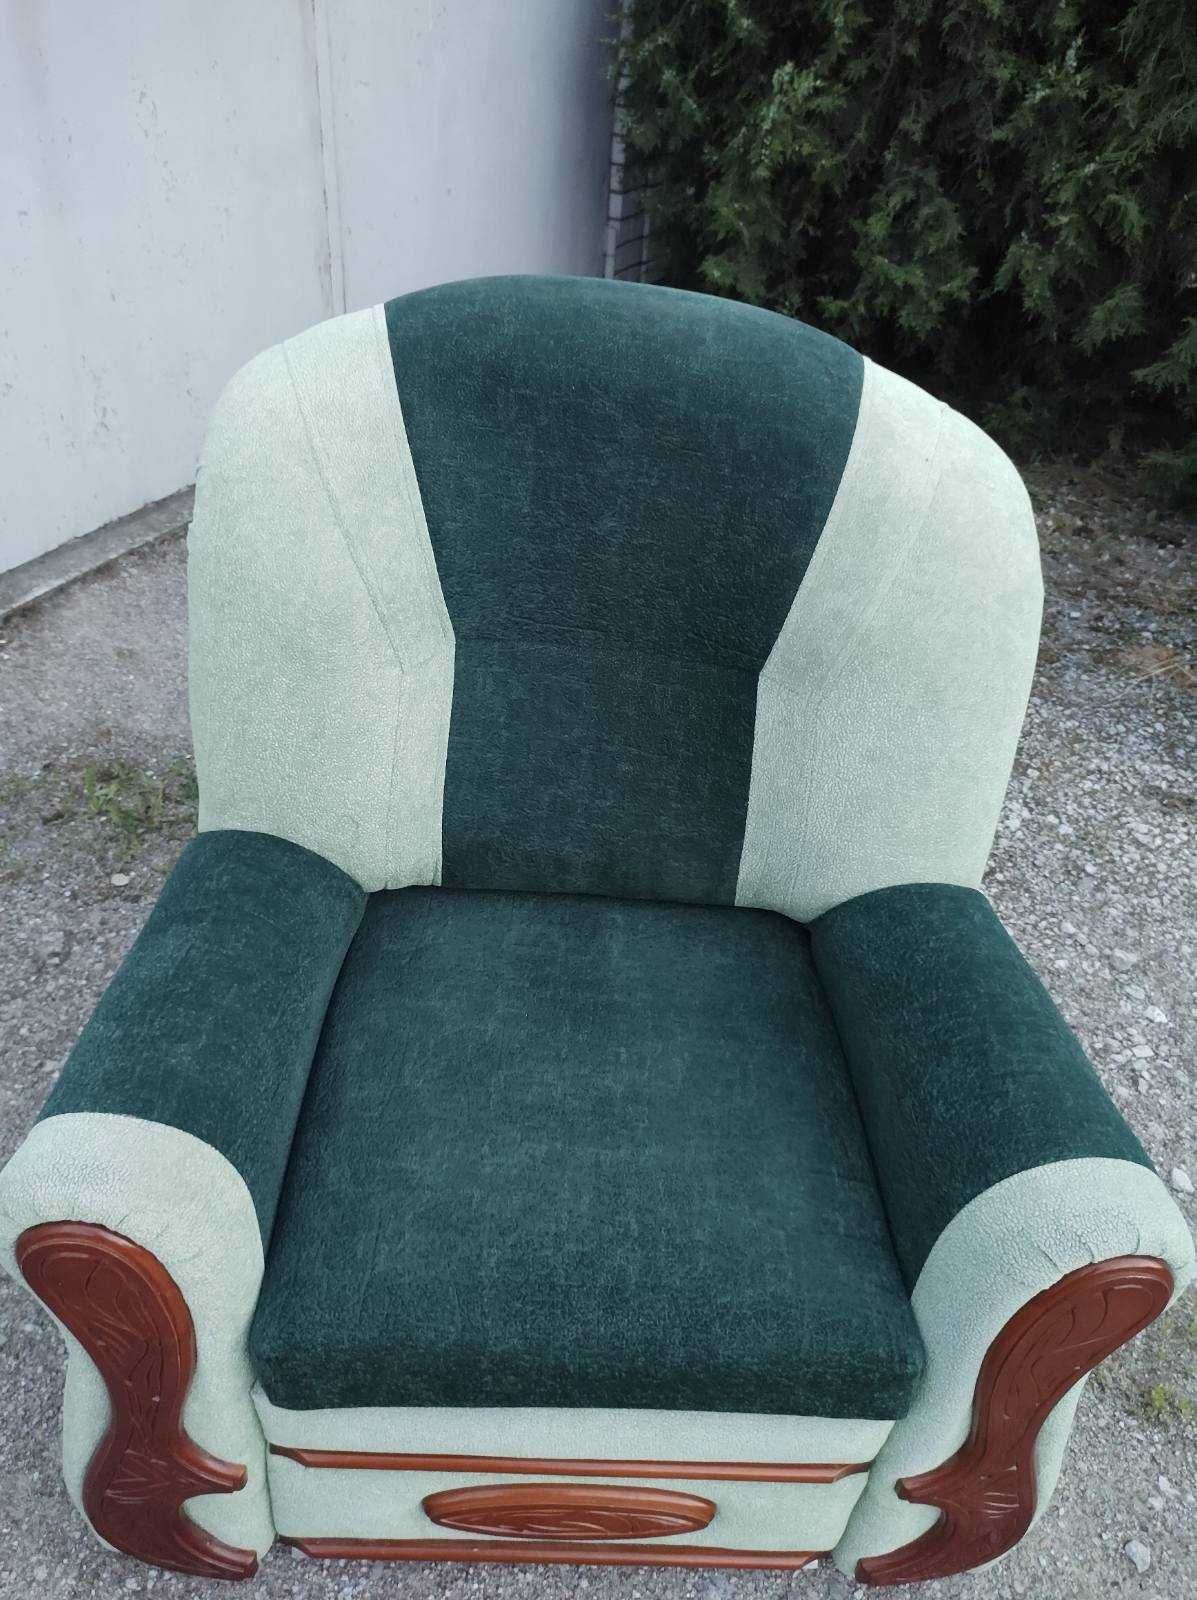 добротное солидное объёмное комфортное кресло-кровать 2шт.отлич.сост.